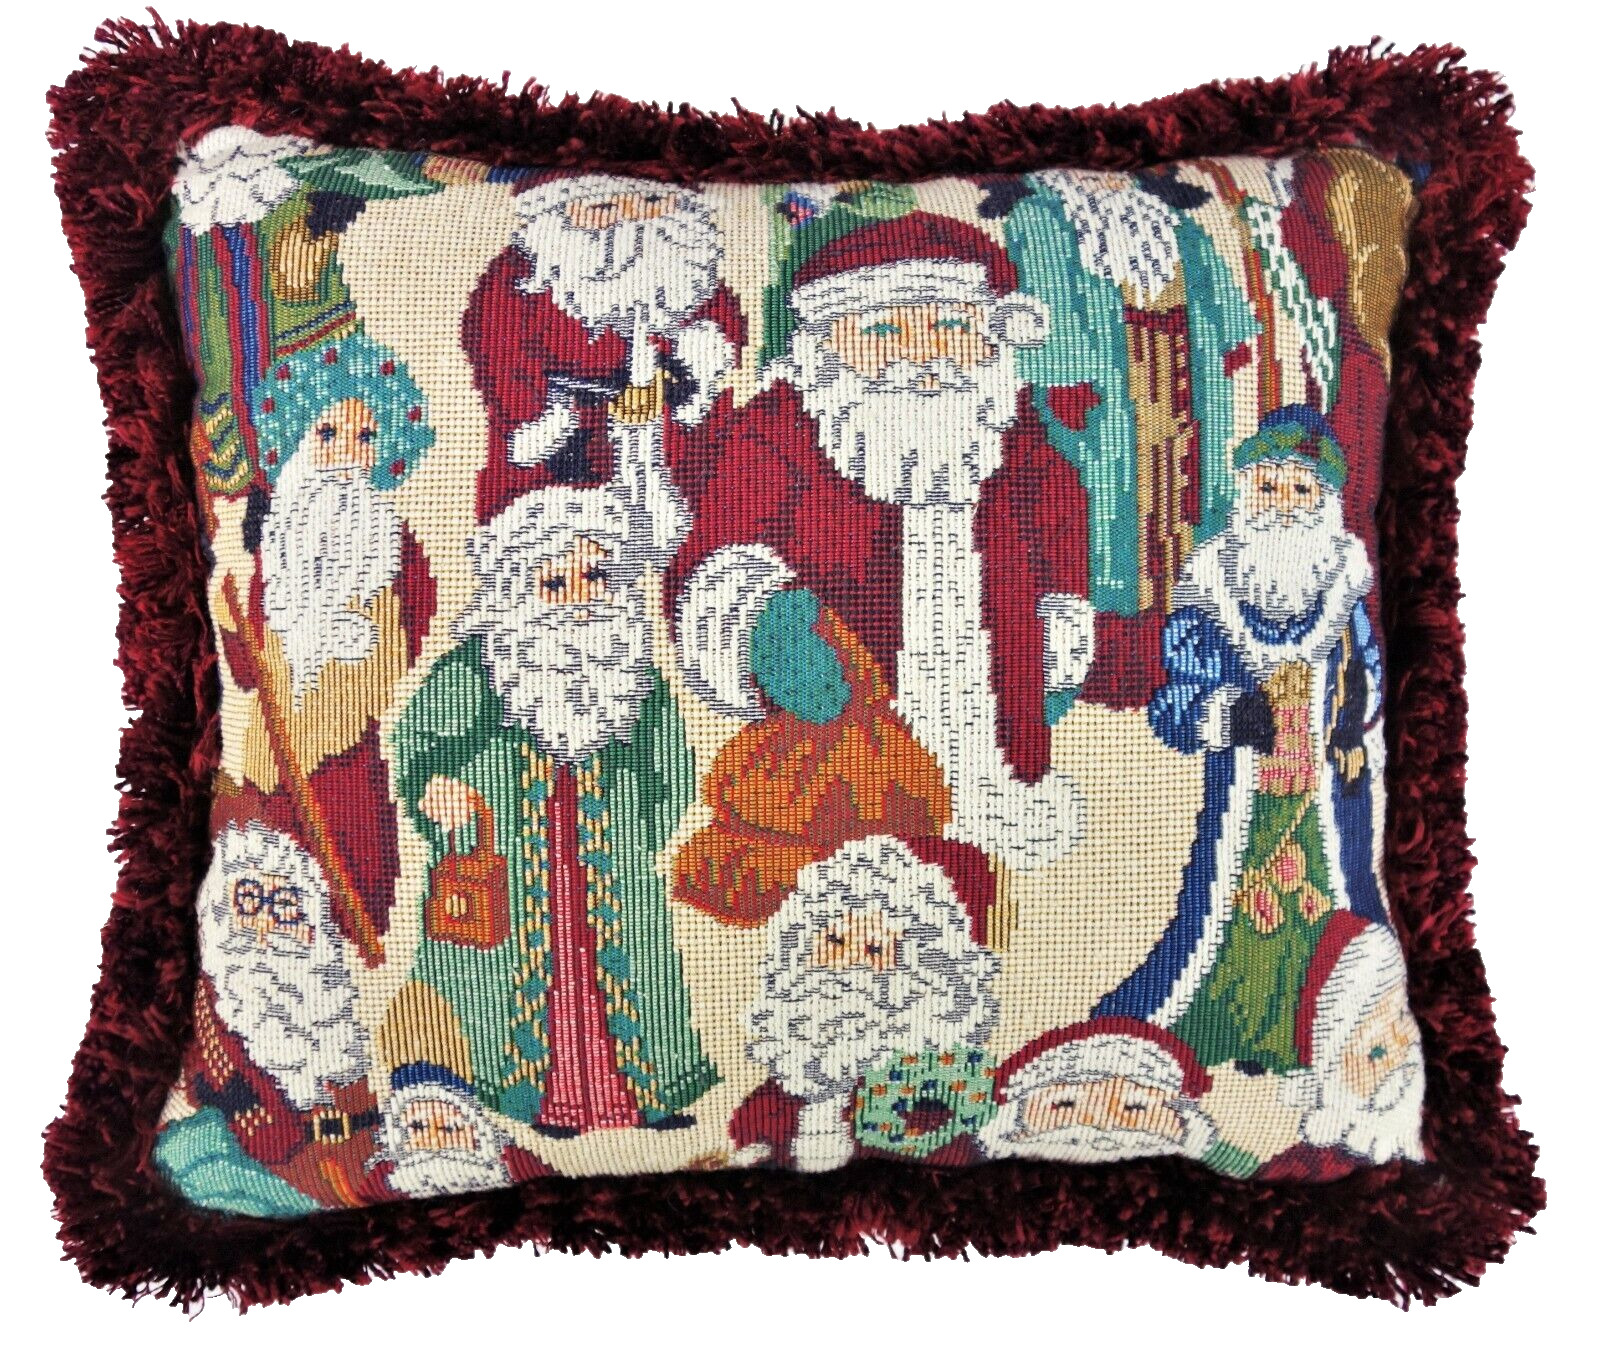 14” x 12” Santa Claus Tapestry Throw Pillow Christmas Holiday Old World Santas